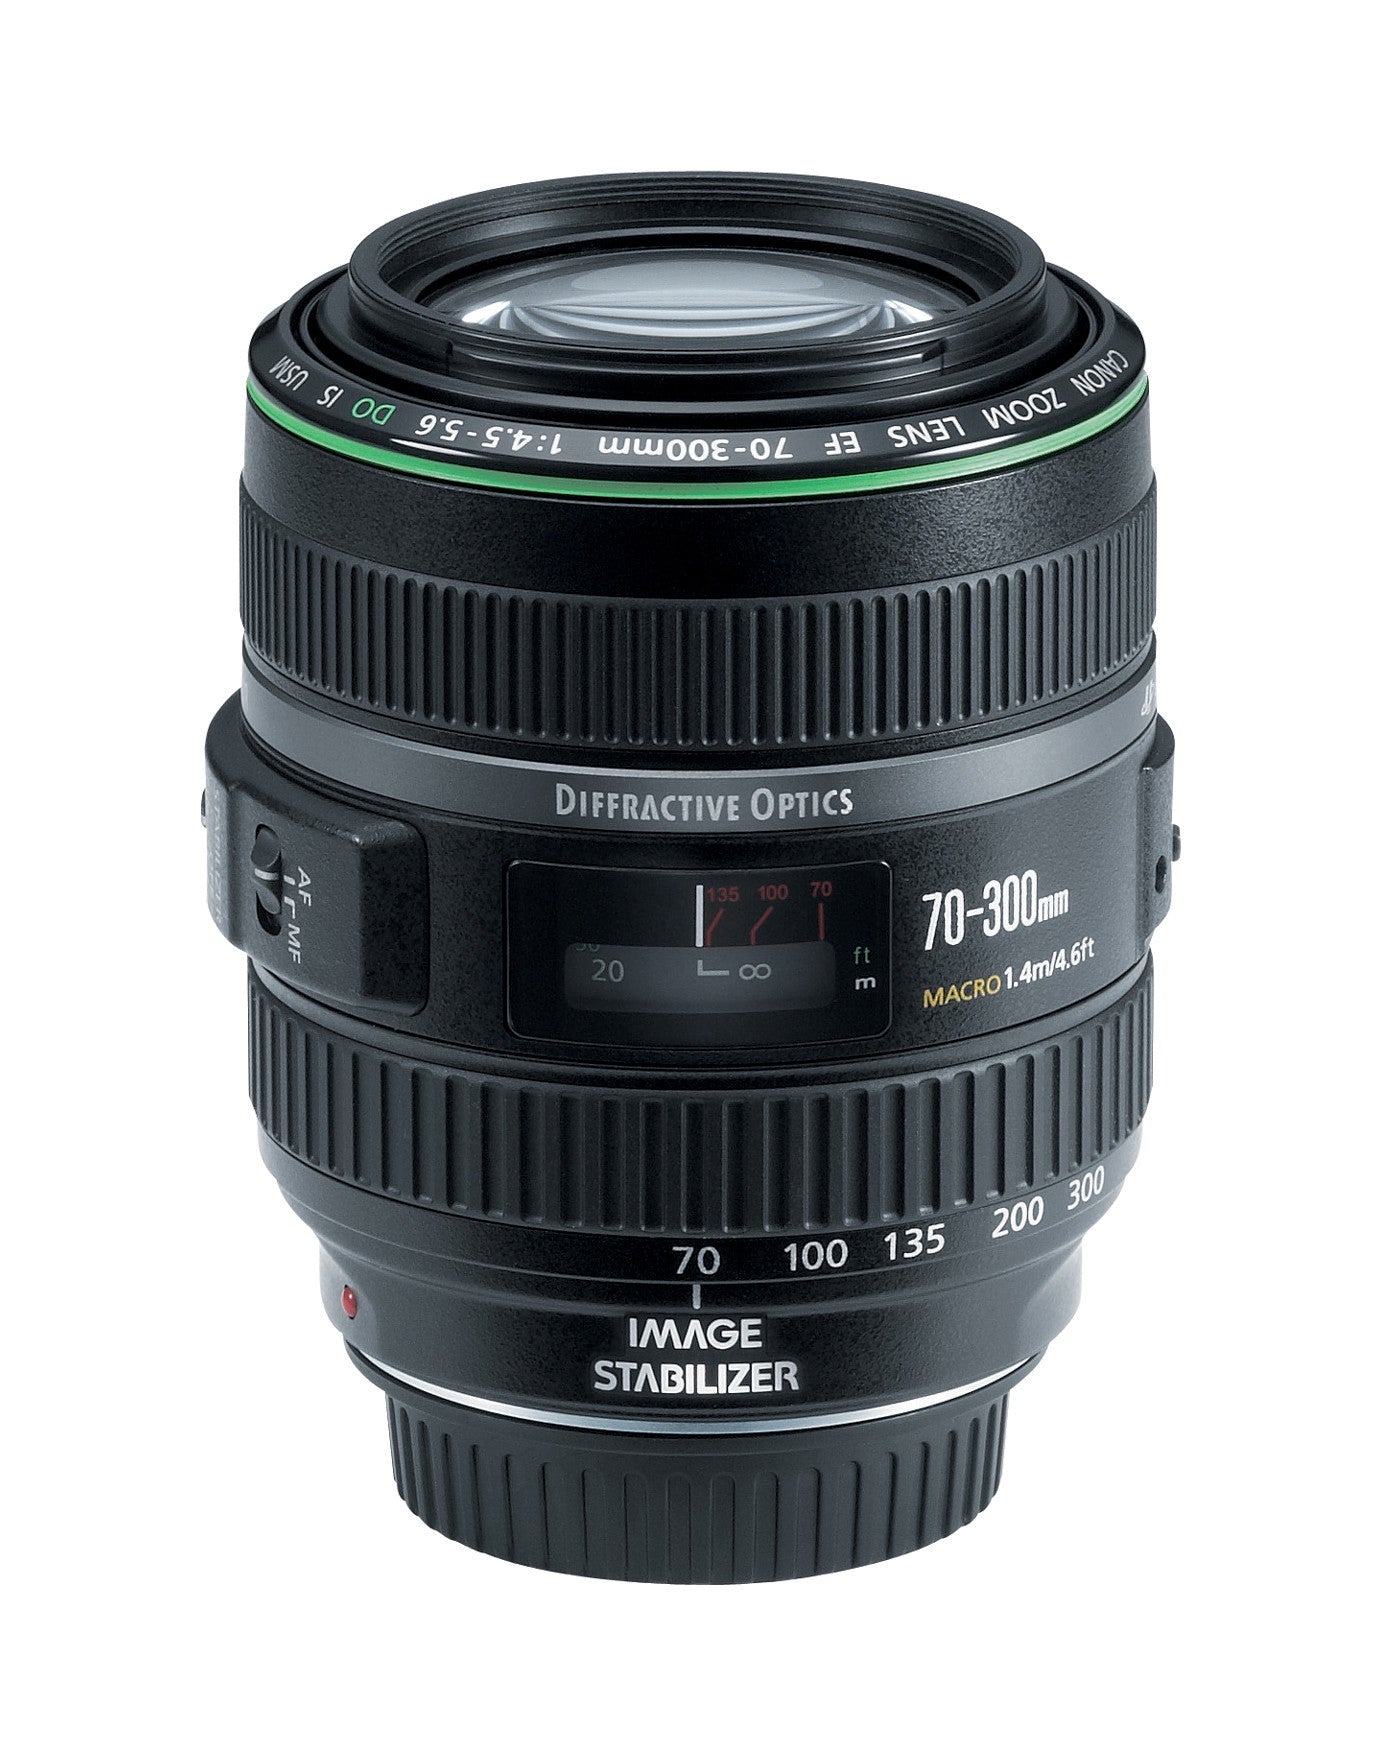 Canon EF 70-300mm f4.5-5.6 DO IS USM Lens, lenses slr lenses, Canon - Pictureline  - 2